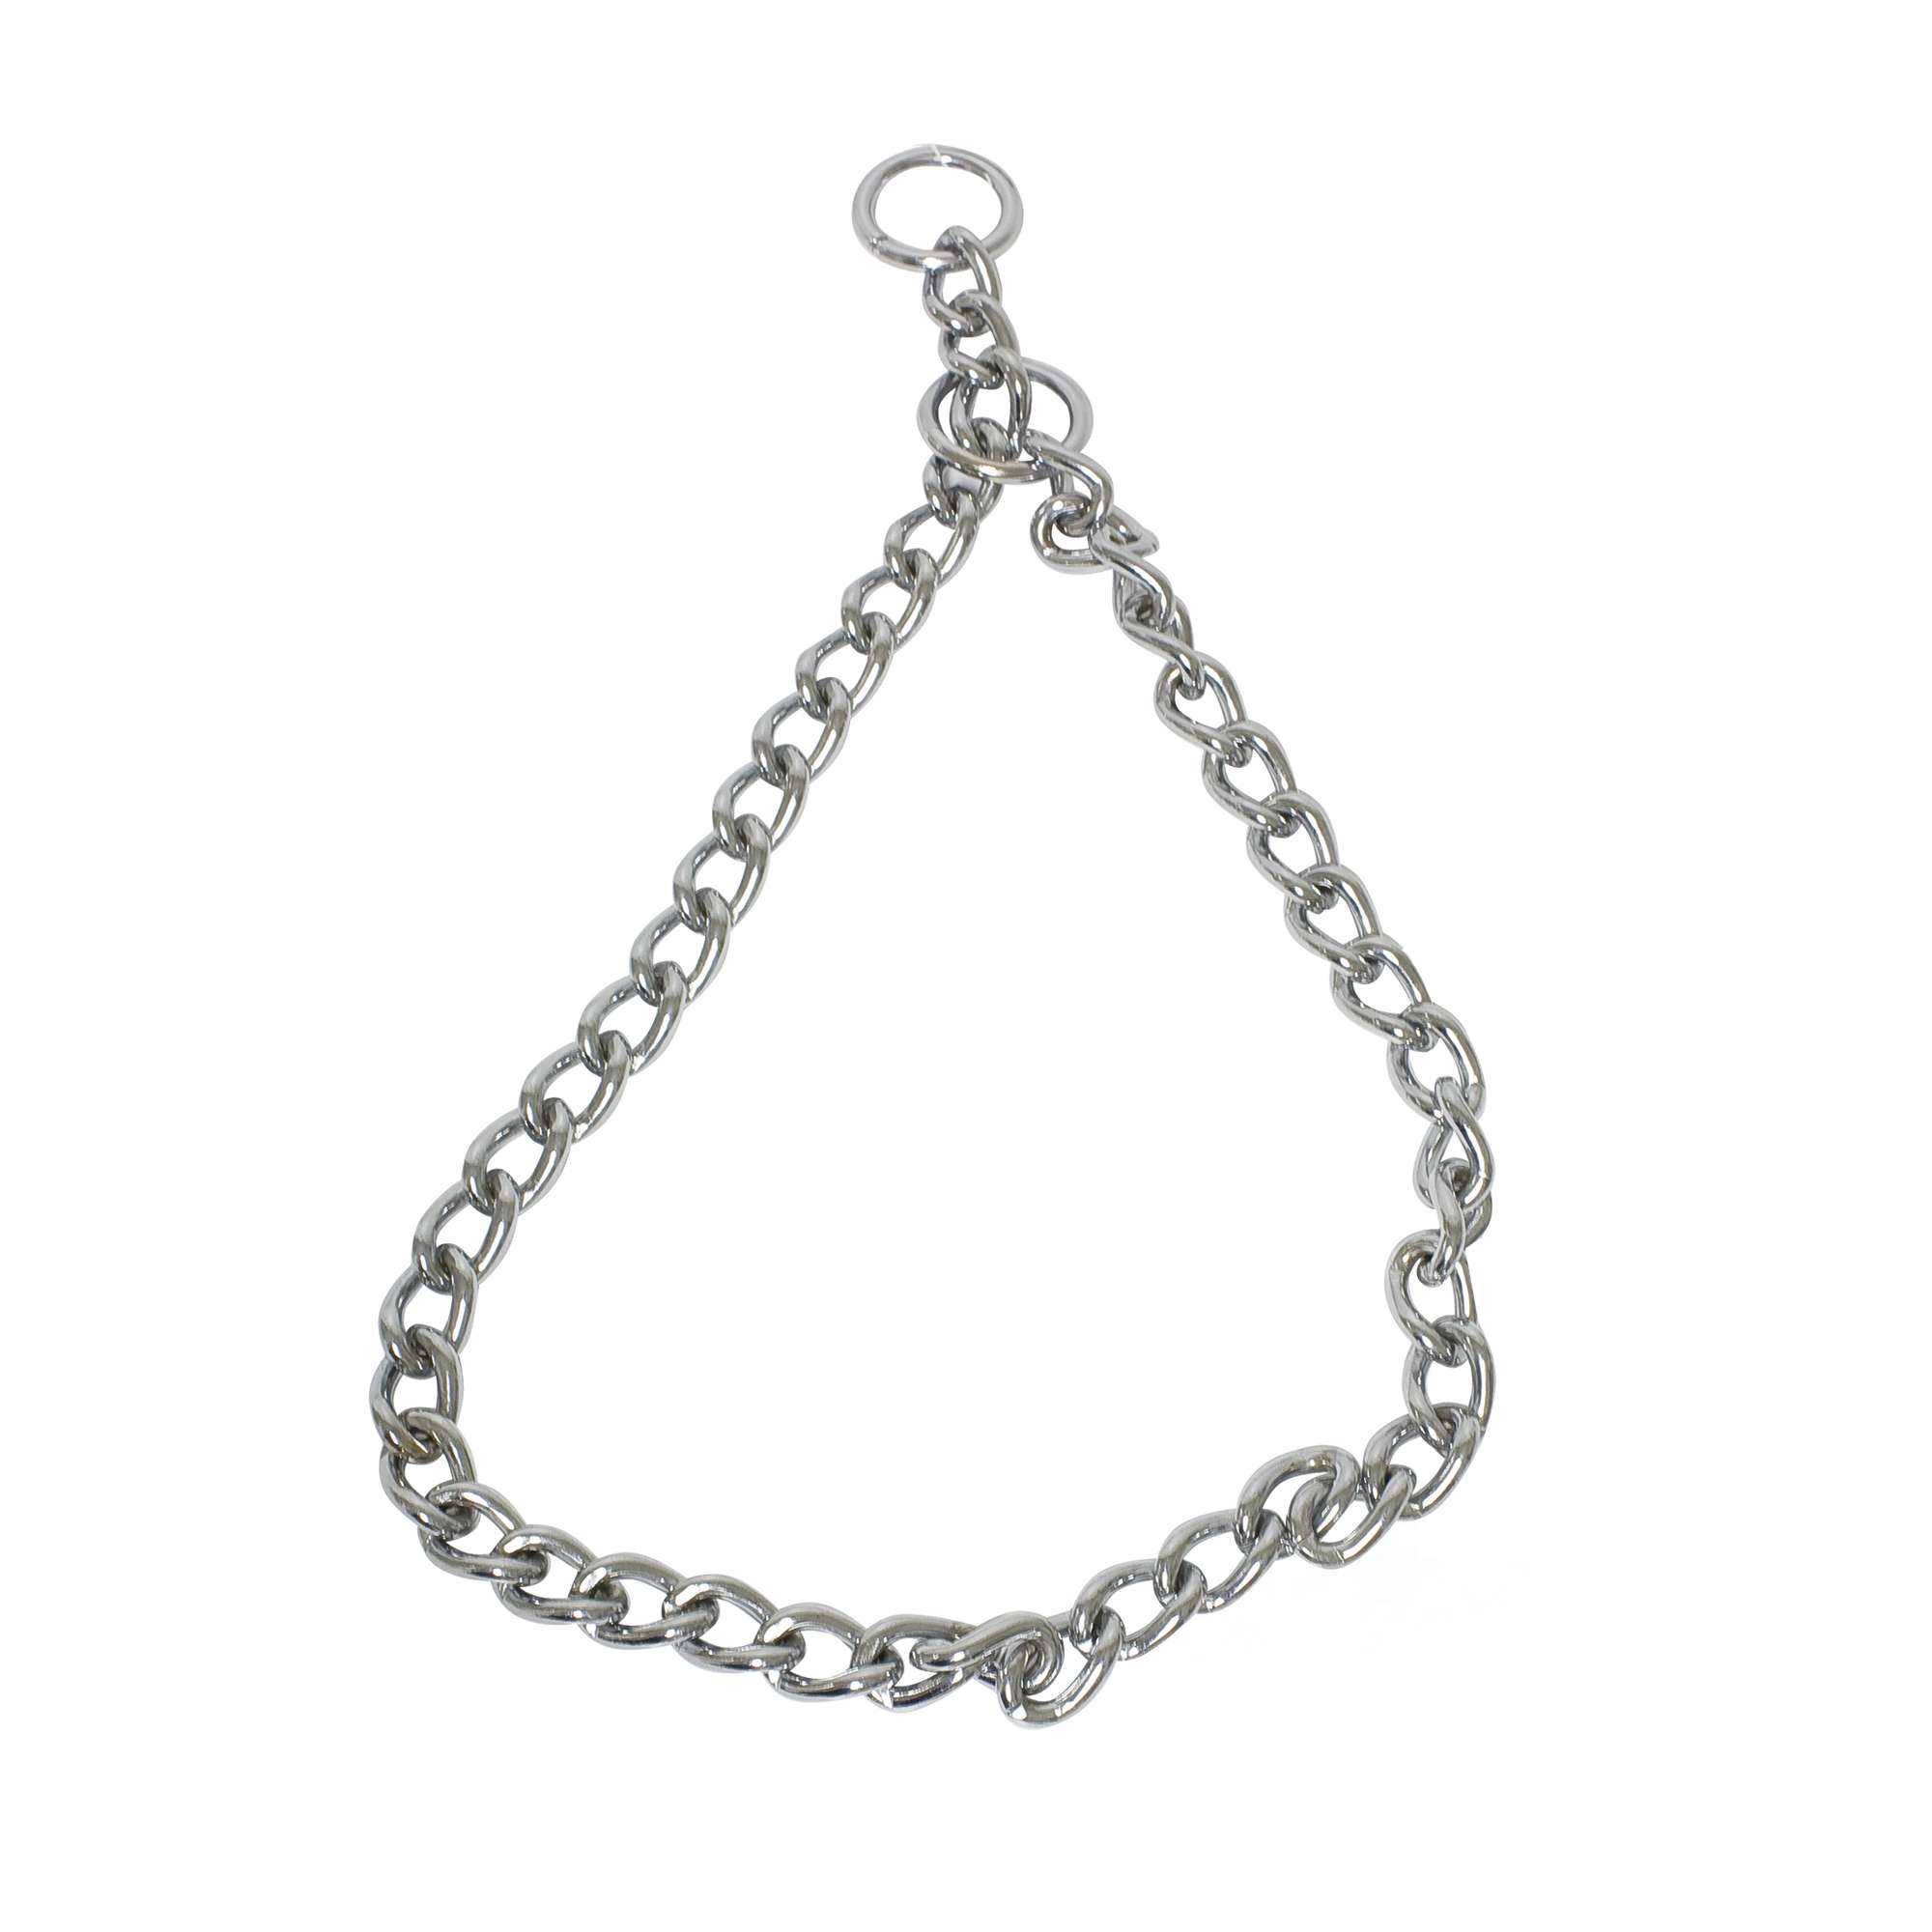 Min Roux Adular Collar especial para Dóberman — ICA S.A.